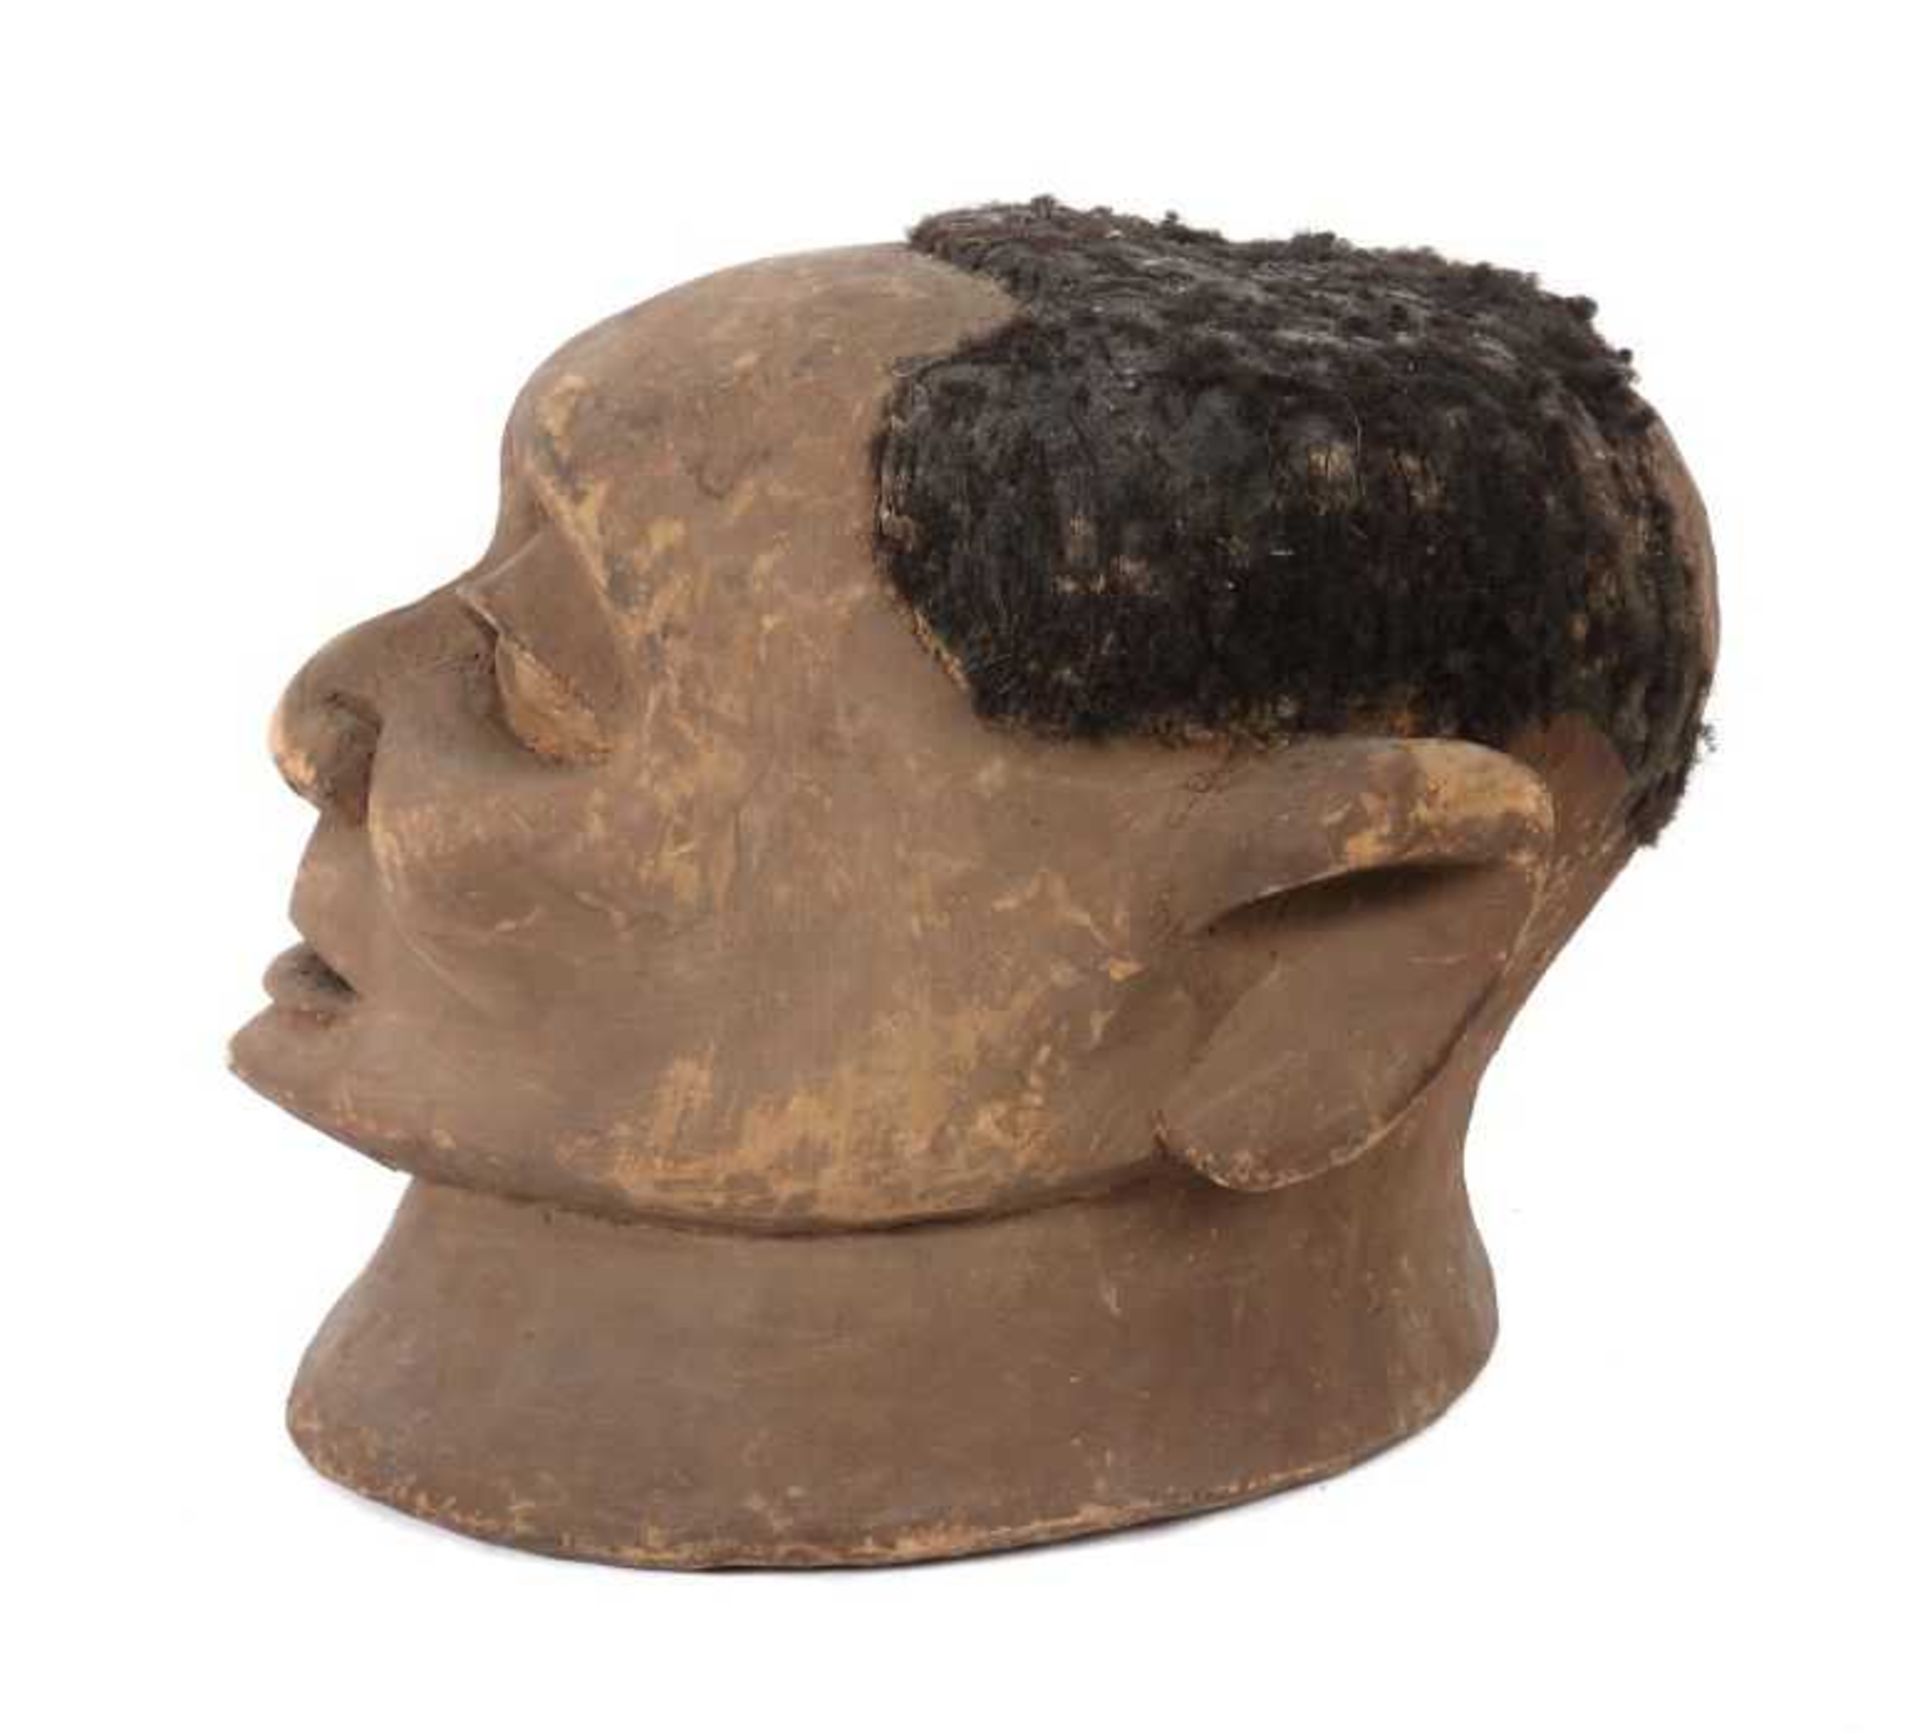 Helmmaske "lipiko" Mosambik, Stamm der Makonde, leichtes, helles Holz geschnitzt, braun patiniert, - Bild 2 aus 2